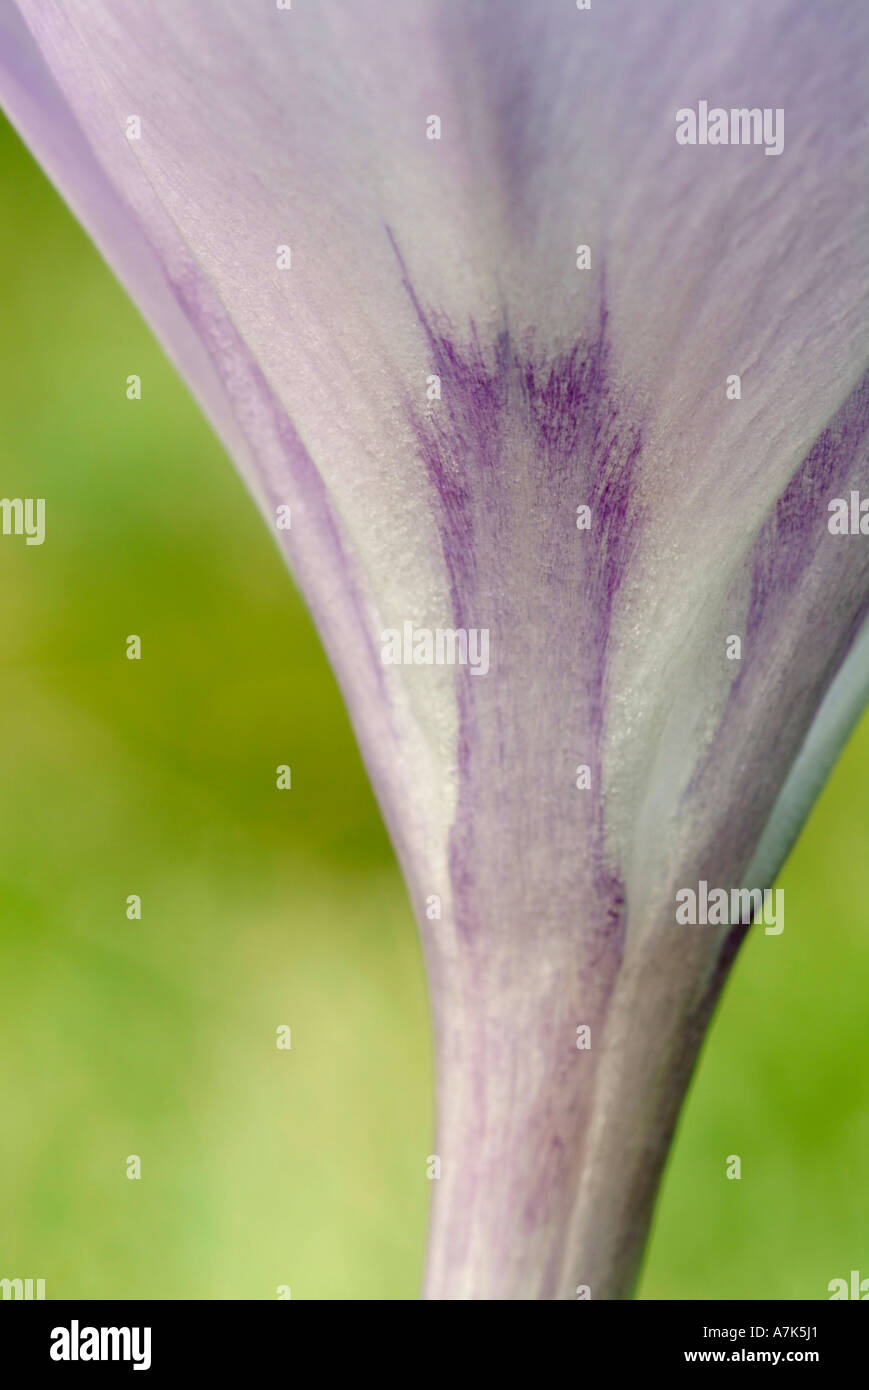 Crocus 'Little Dorrit' petal detail Stock Photo